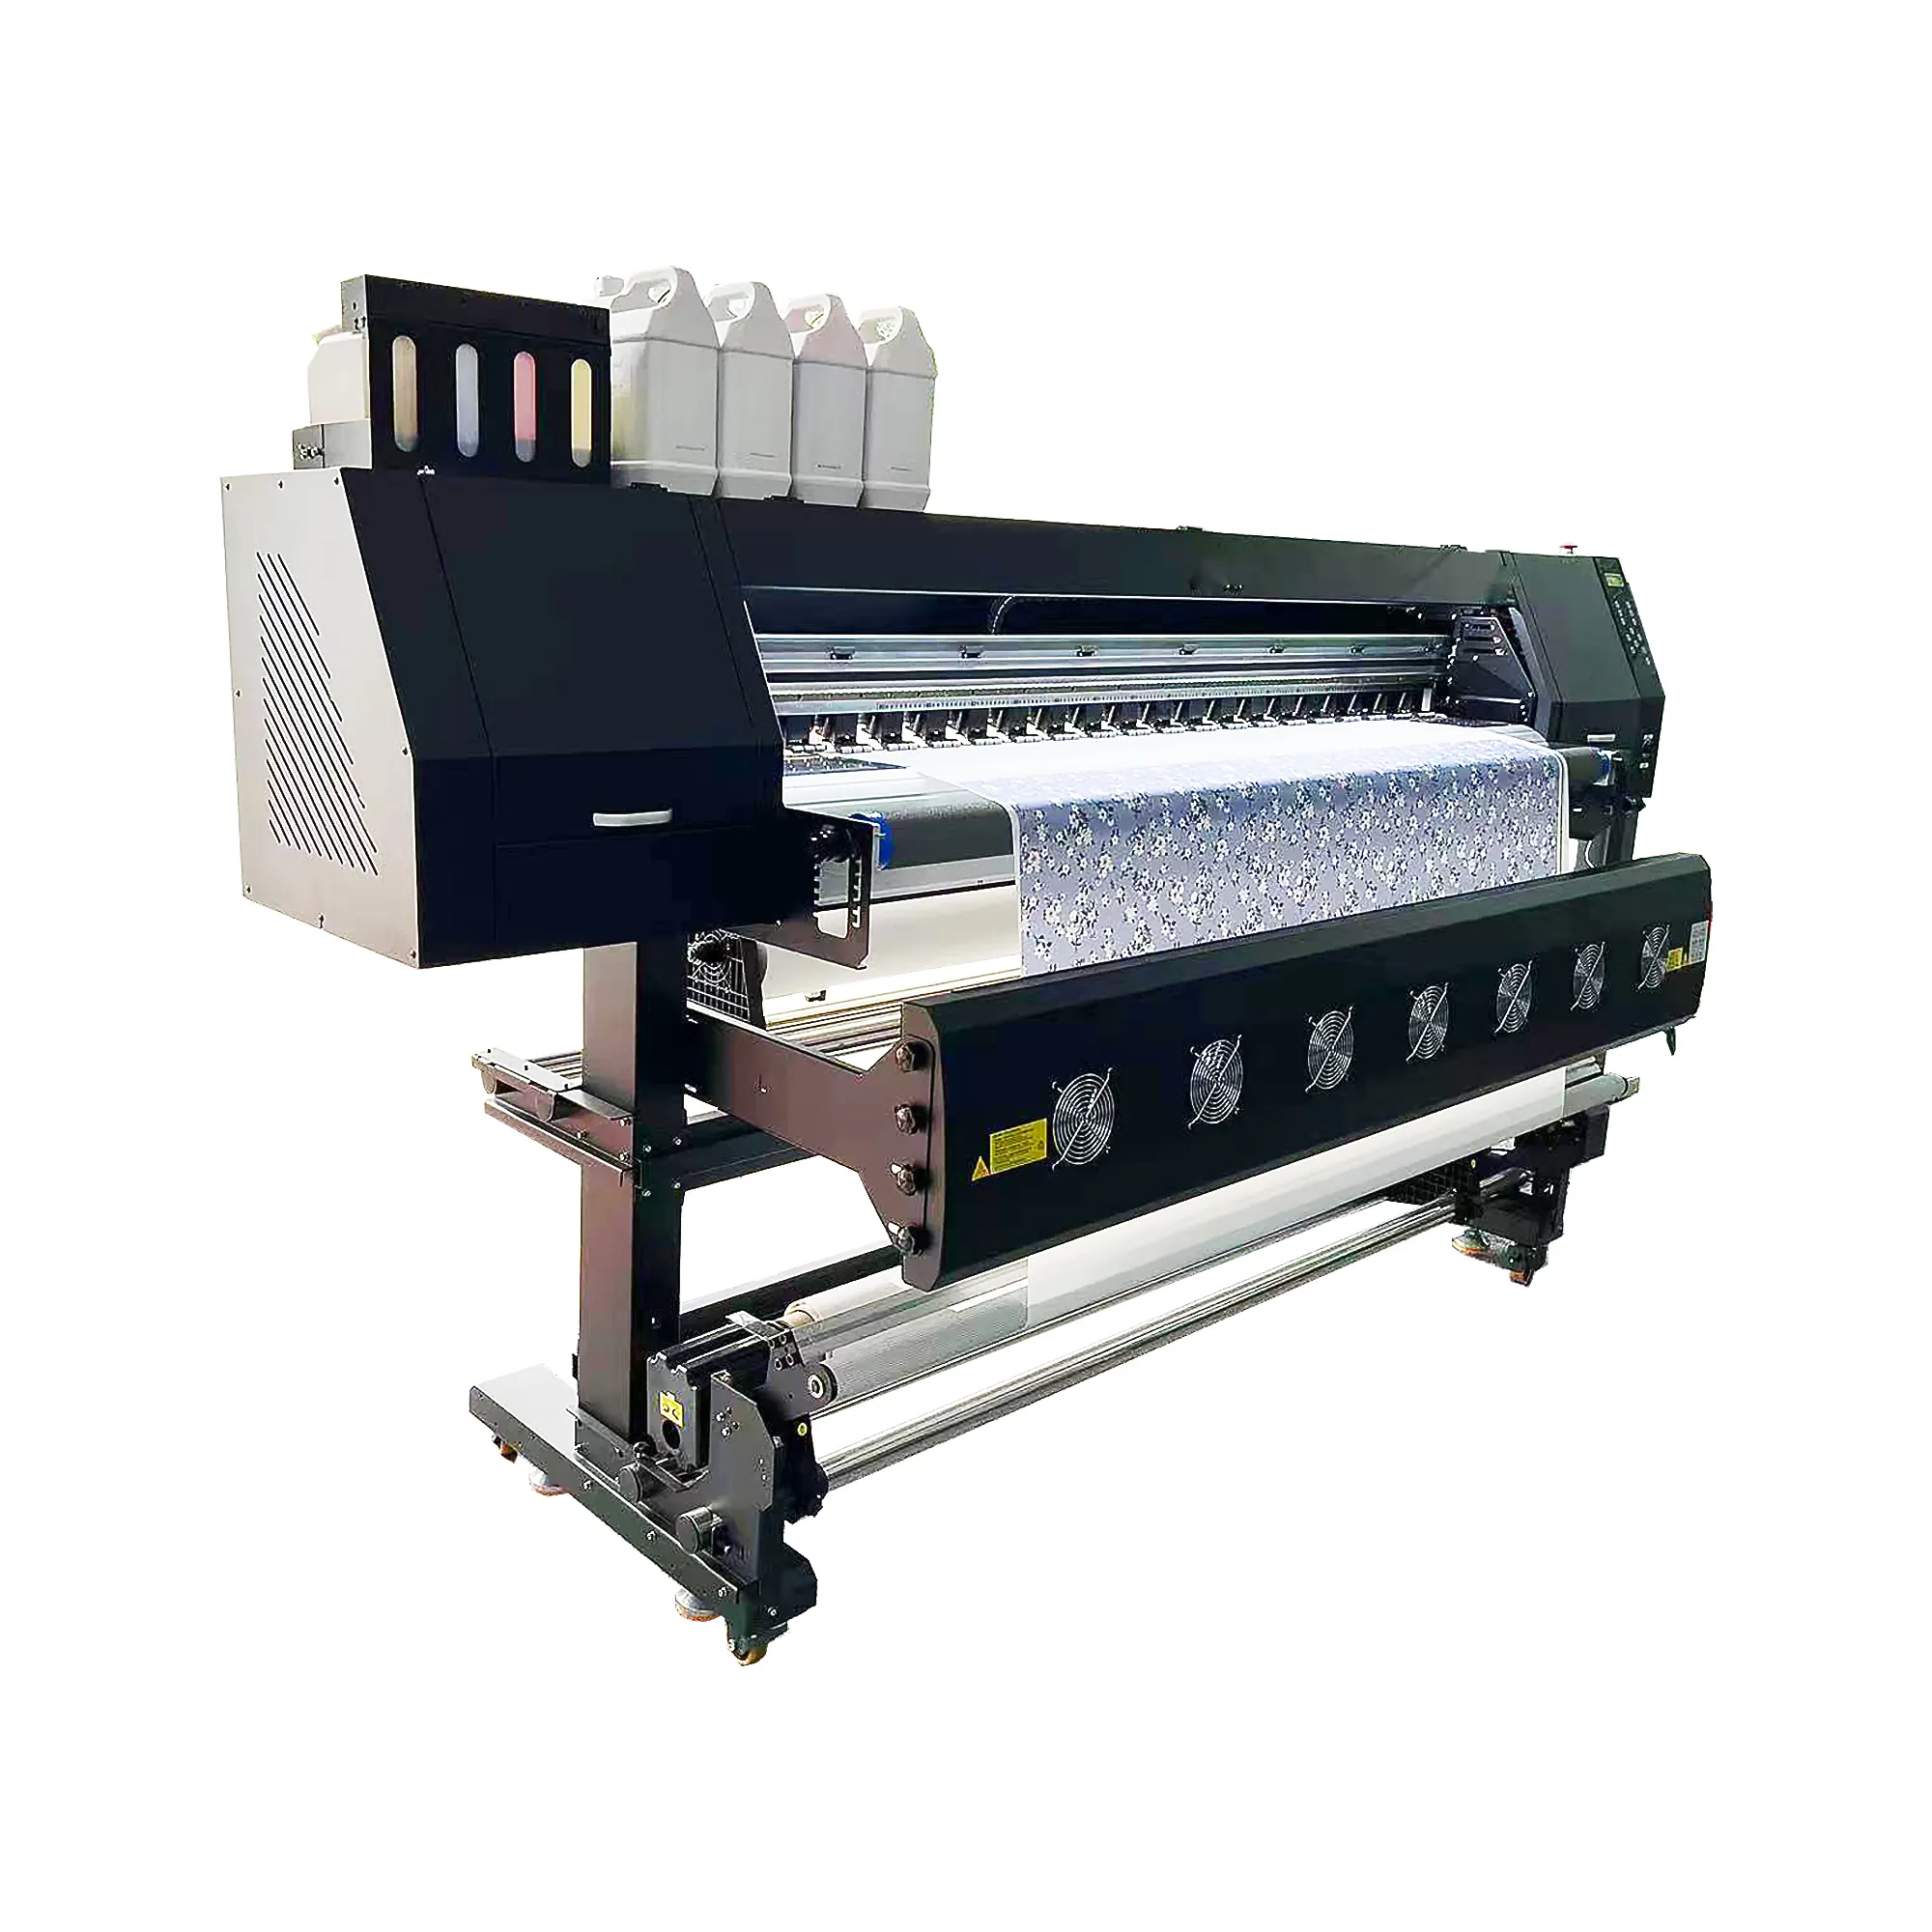 เครื่องพิมพ์ระเหิดอุตสาหกรรม I3200 DTF เครื่องพิมพ์กระดาษถ่ายโอนความร้อน